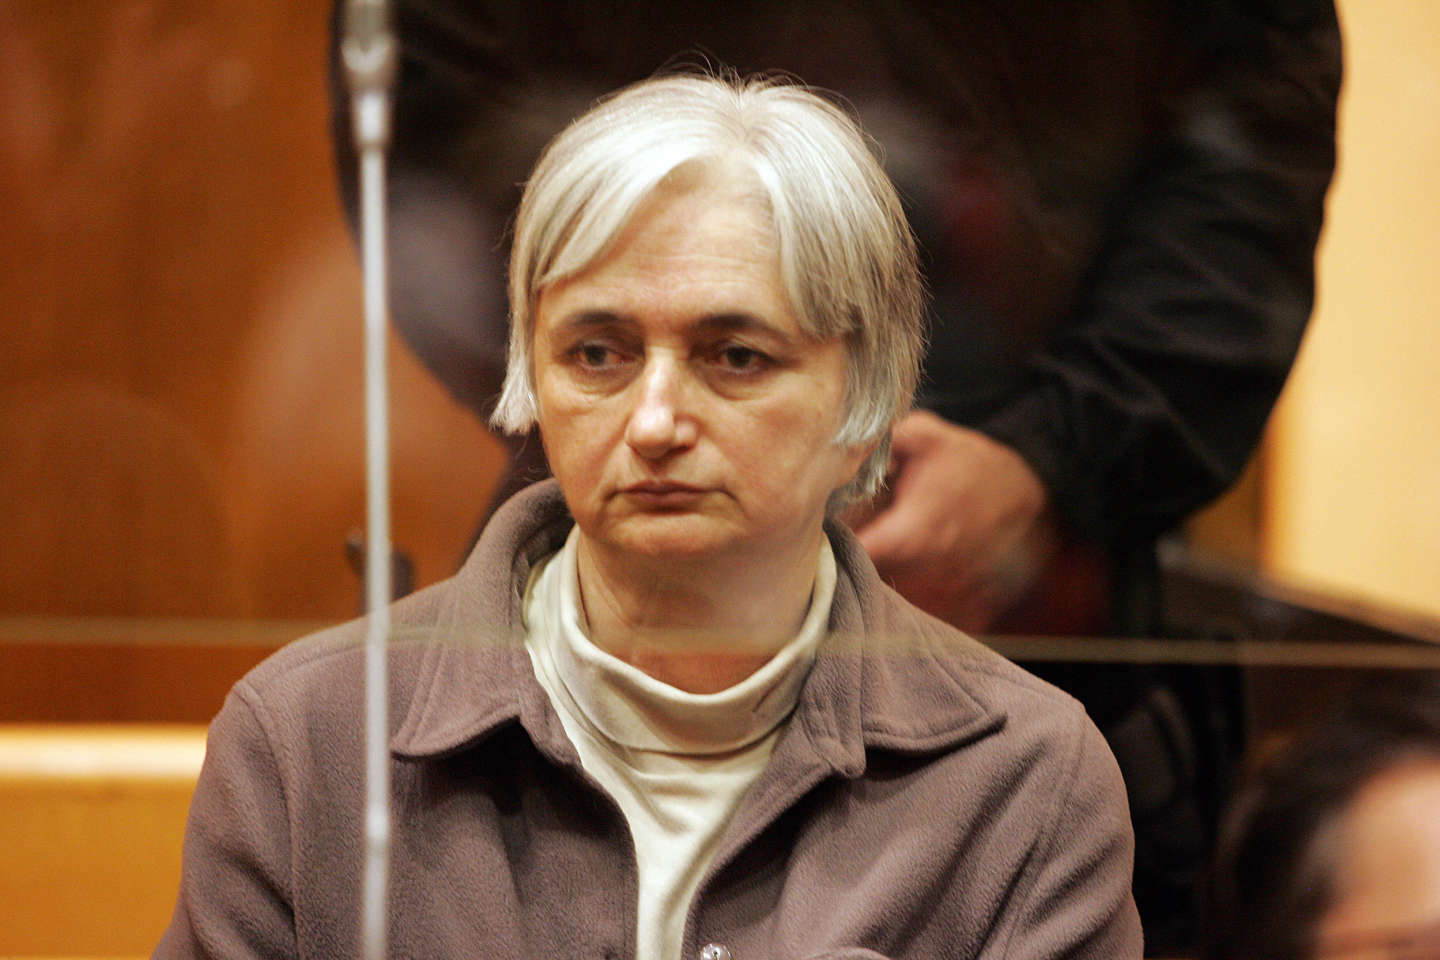 Monique Olivier renvoyée aux assises dans trois affaires, dont celle d’Estelle Mouzin, où la justice a dysfonctionné